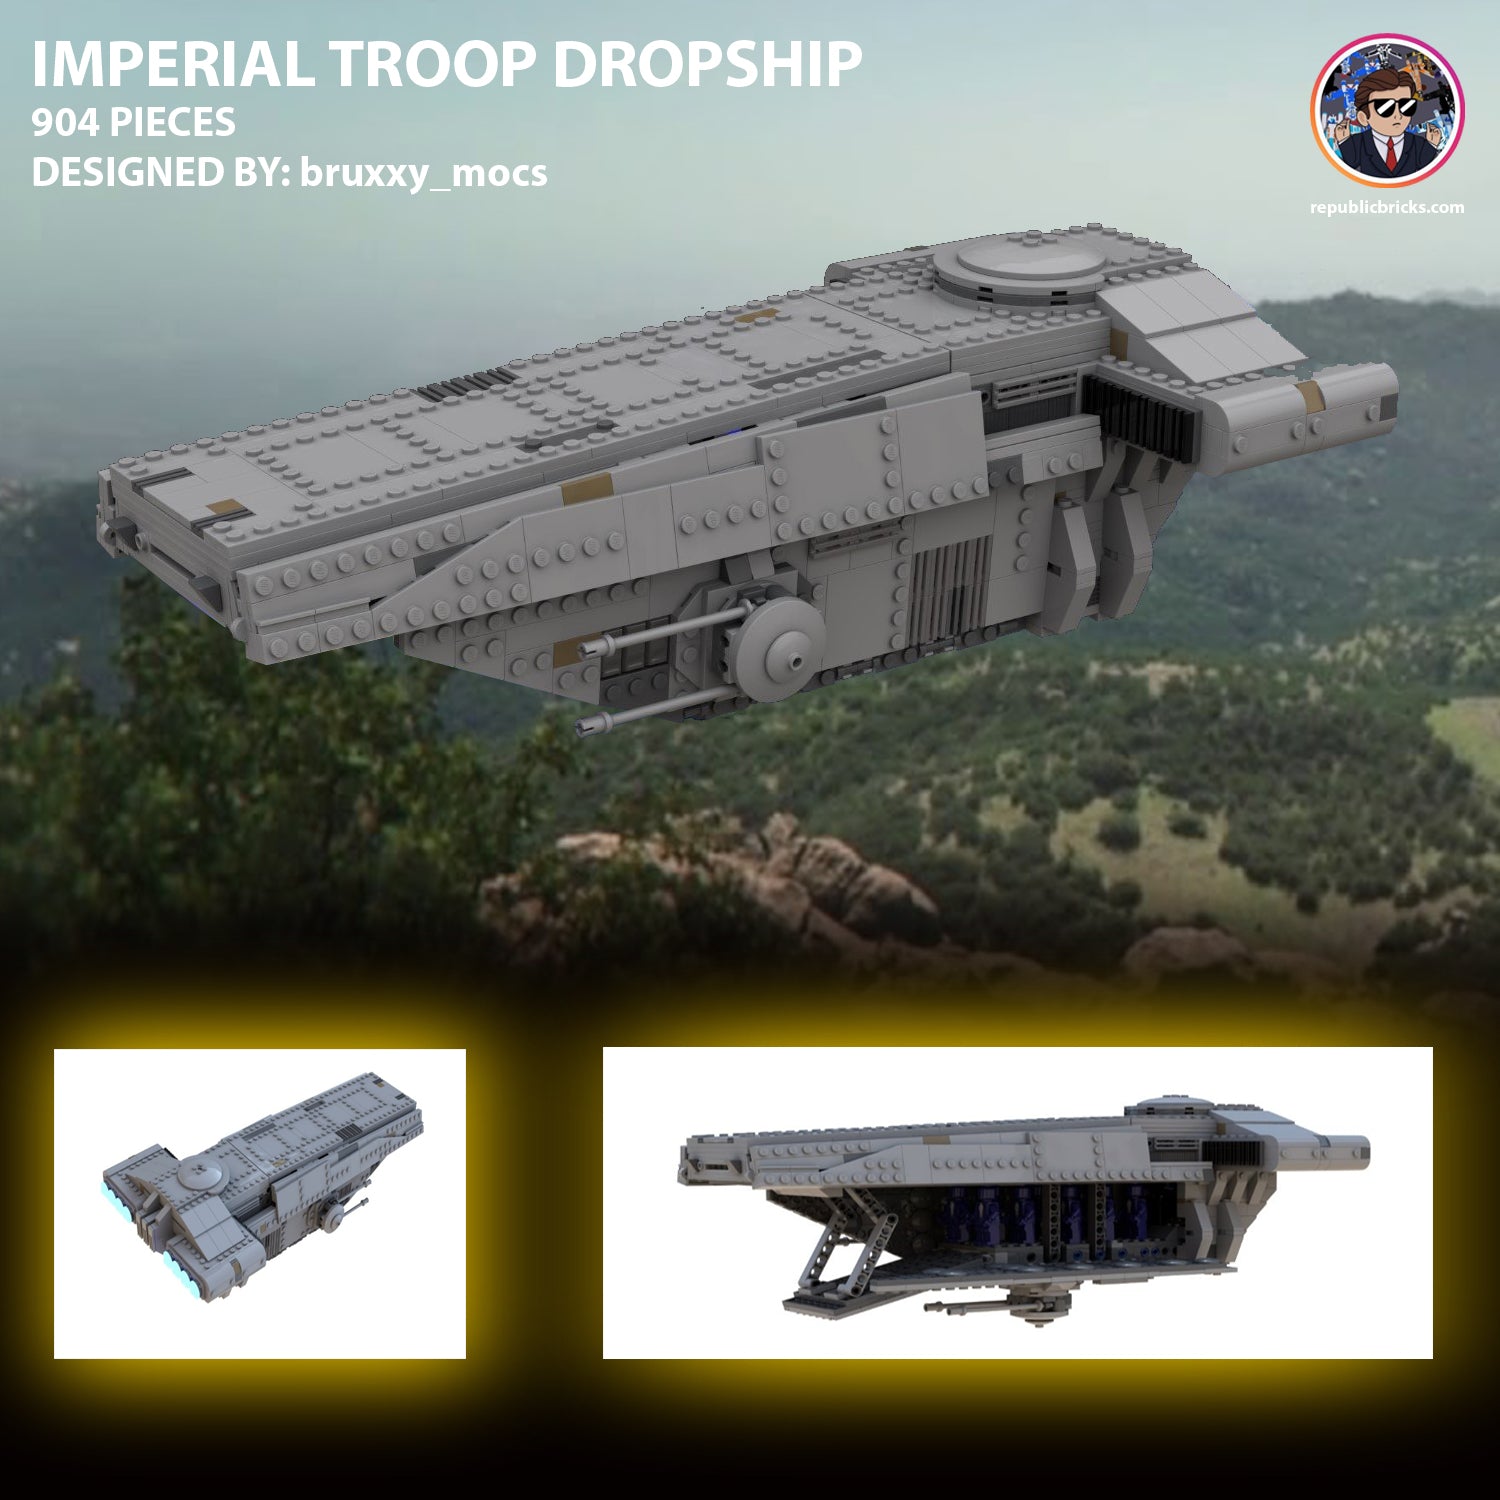 IMPERIAL TROOP DROPSHIP